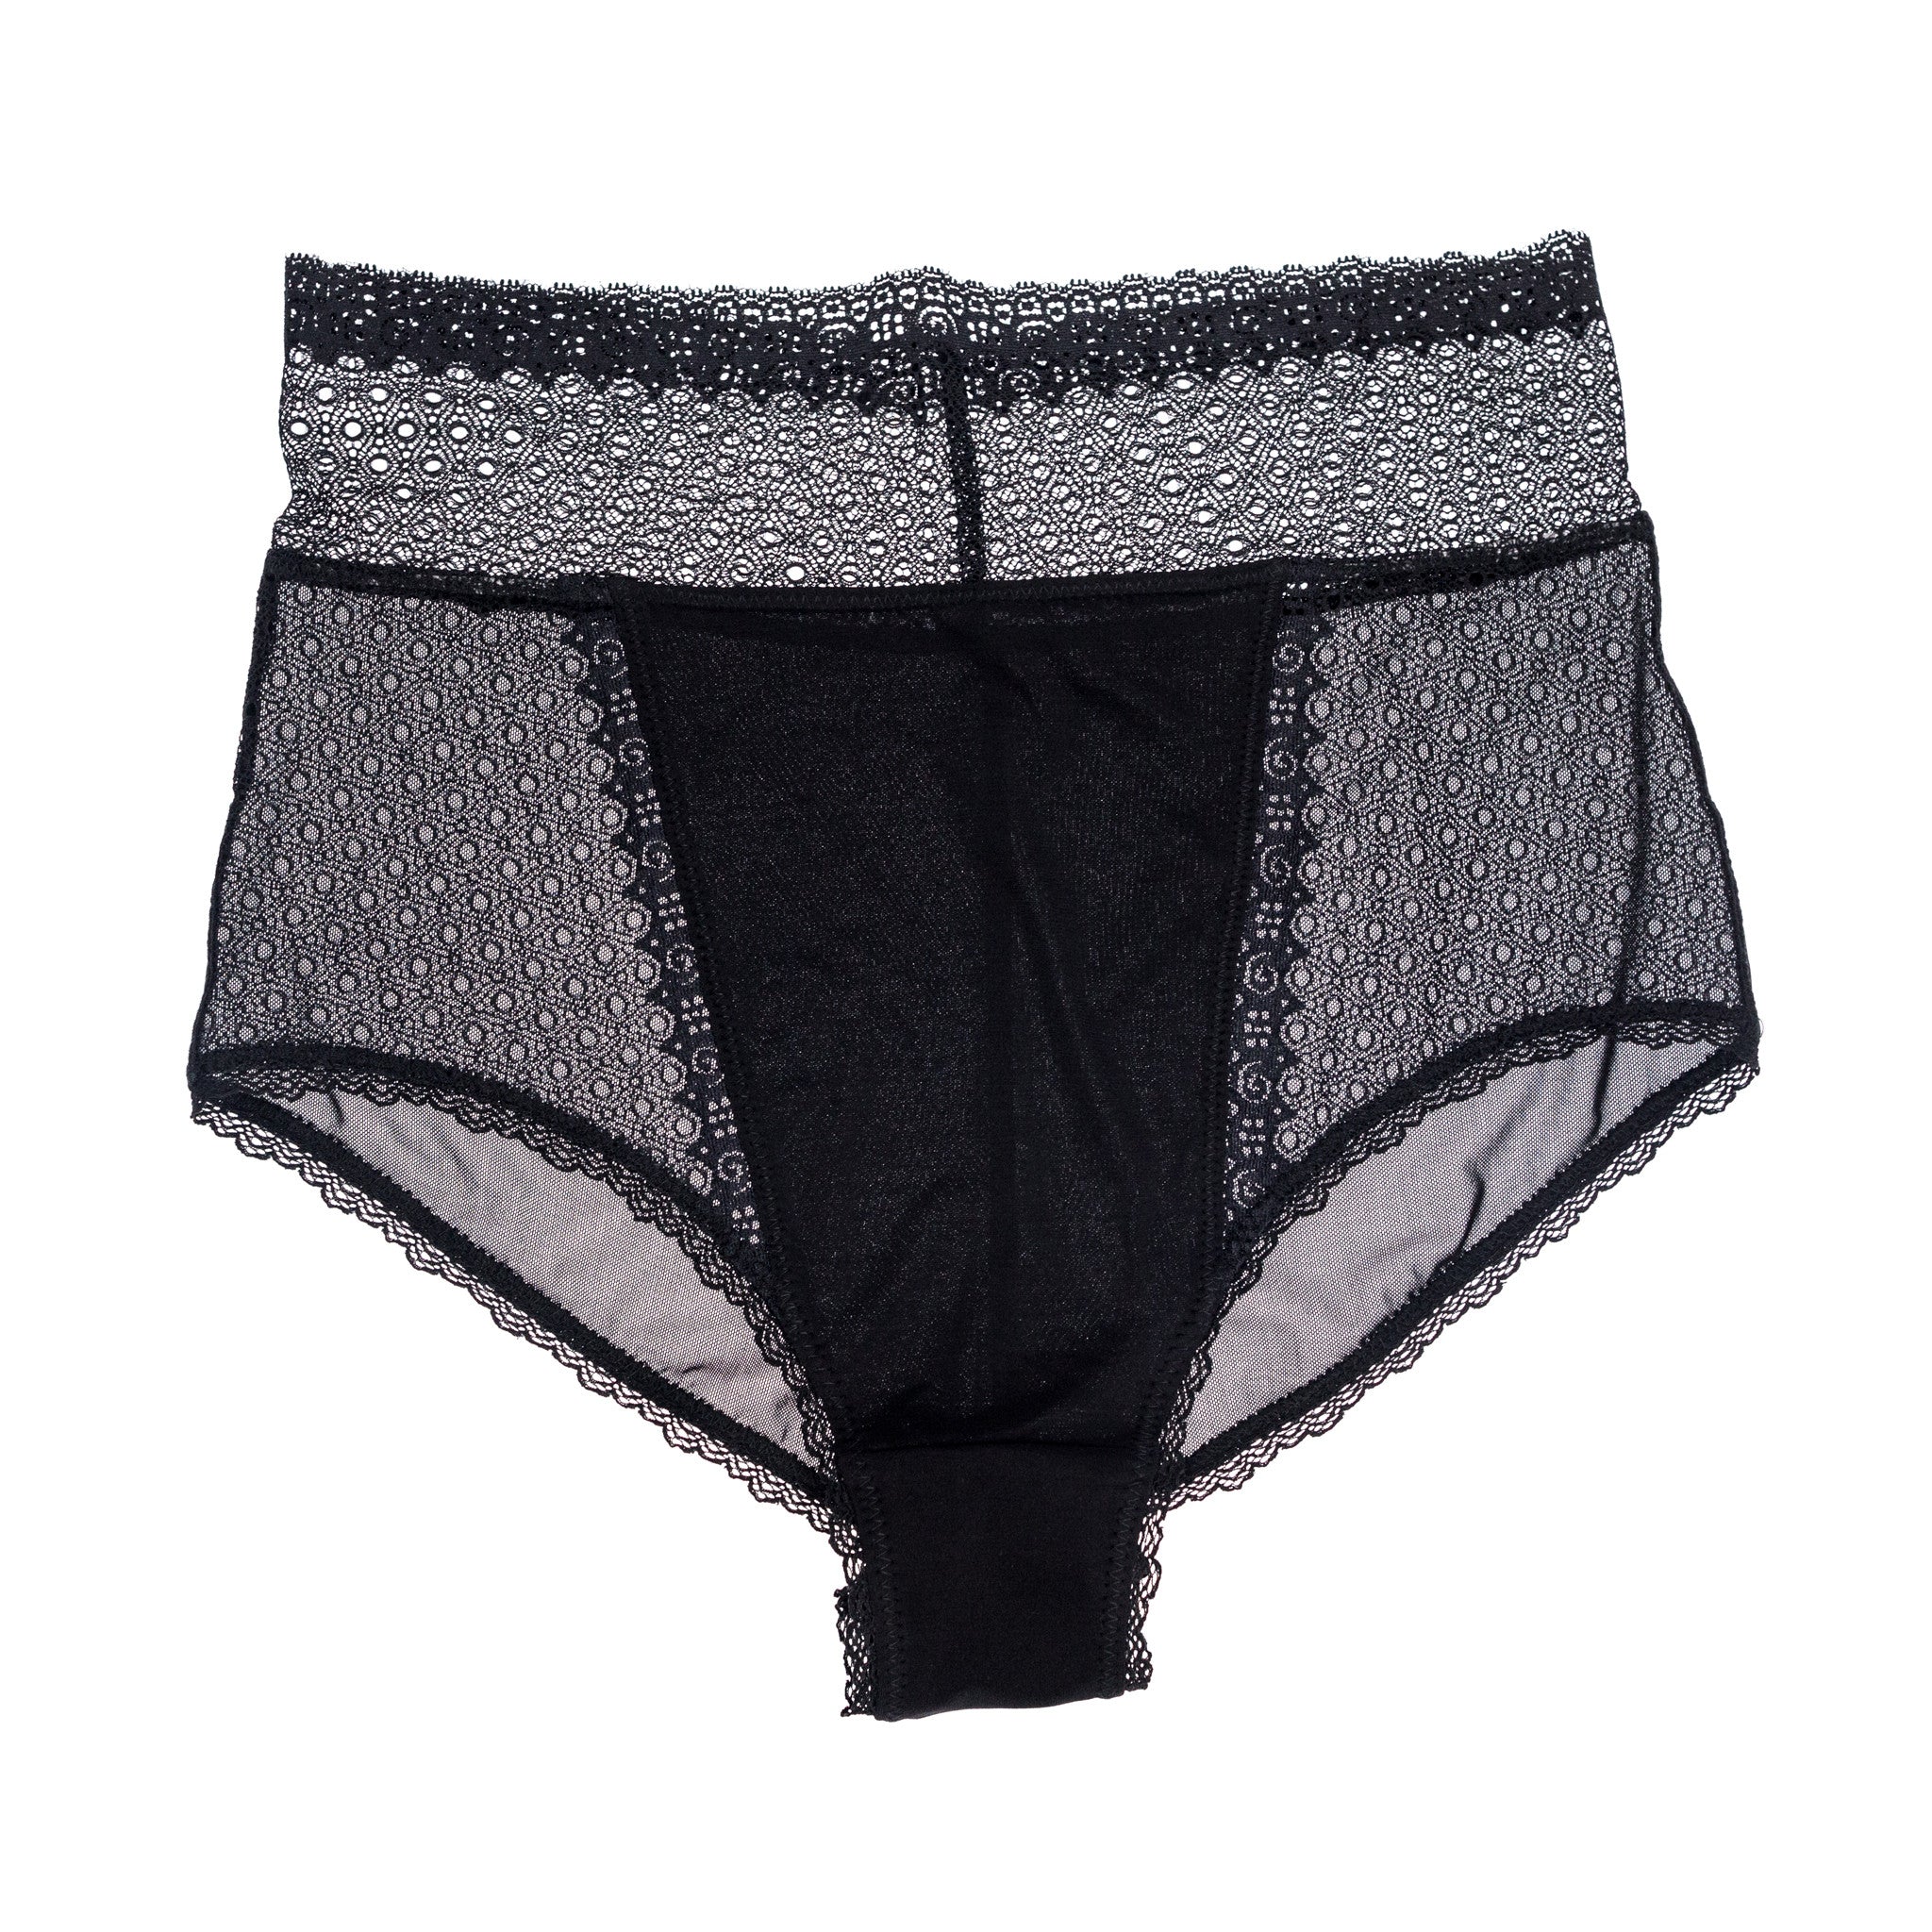 SC2000: Scarlett High Waist Panty in Black Nyx – Changewear